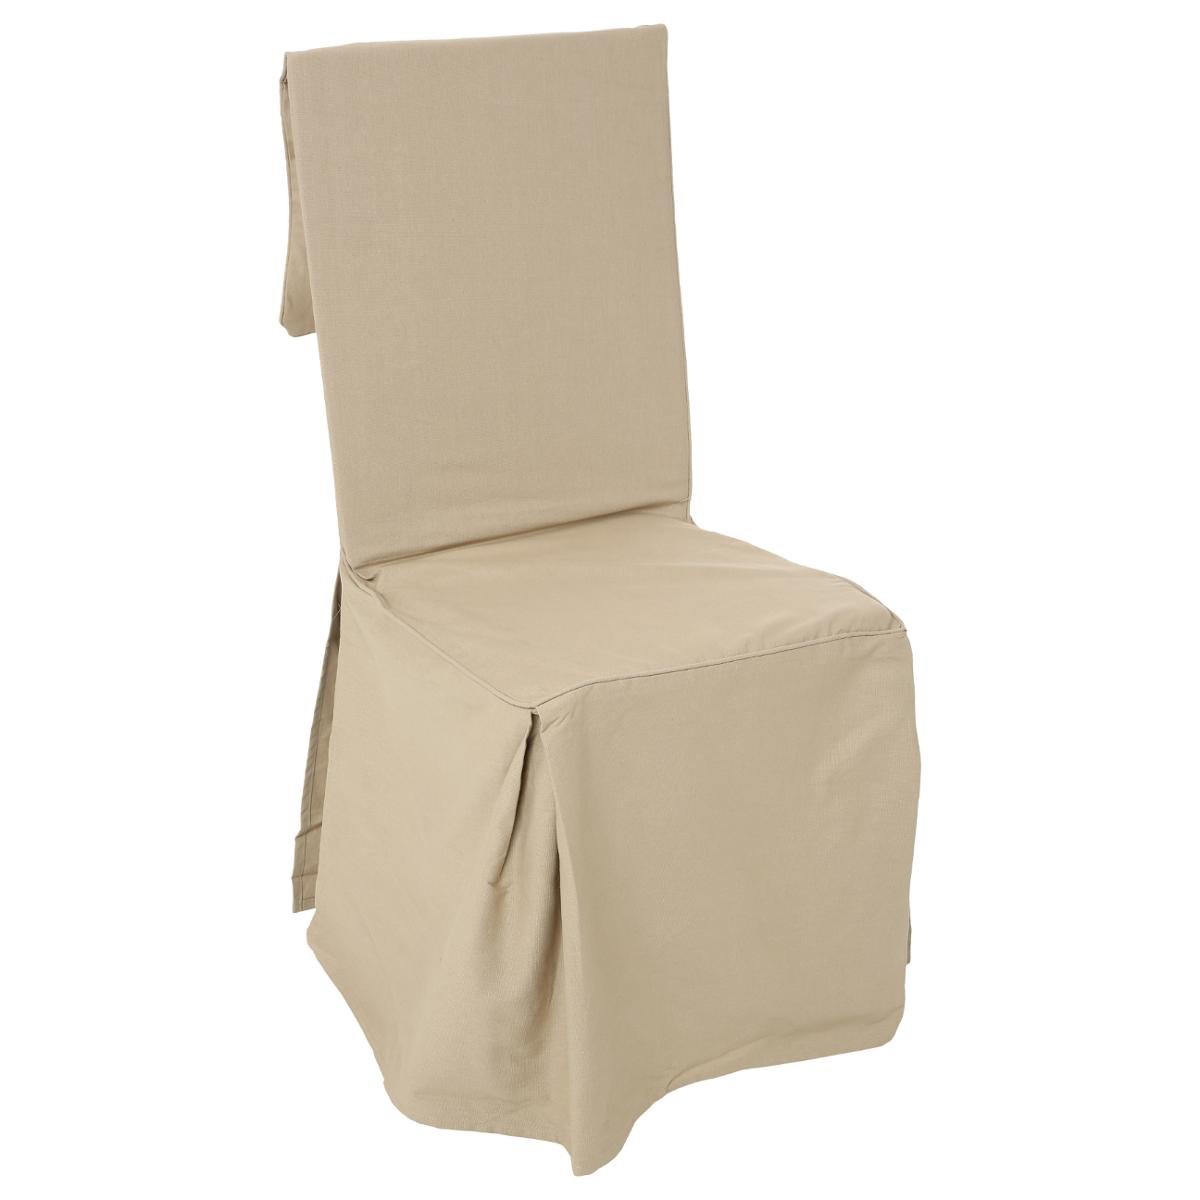 Housse de chaise en lin lavé vert jade, compatible chaise MARGAUX MARGAUX